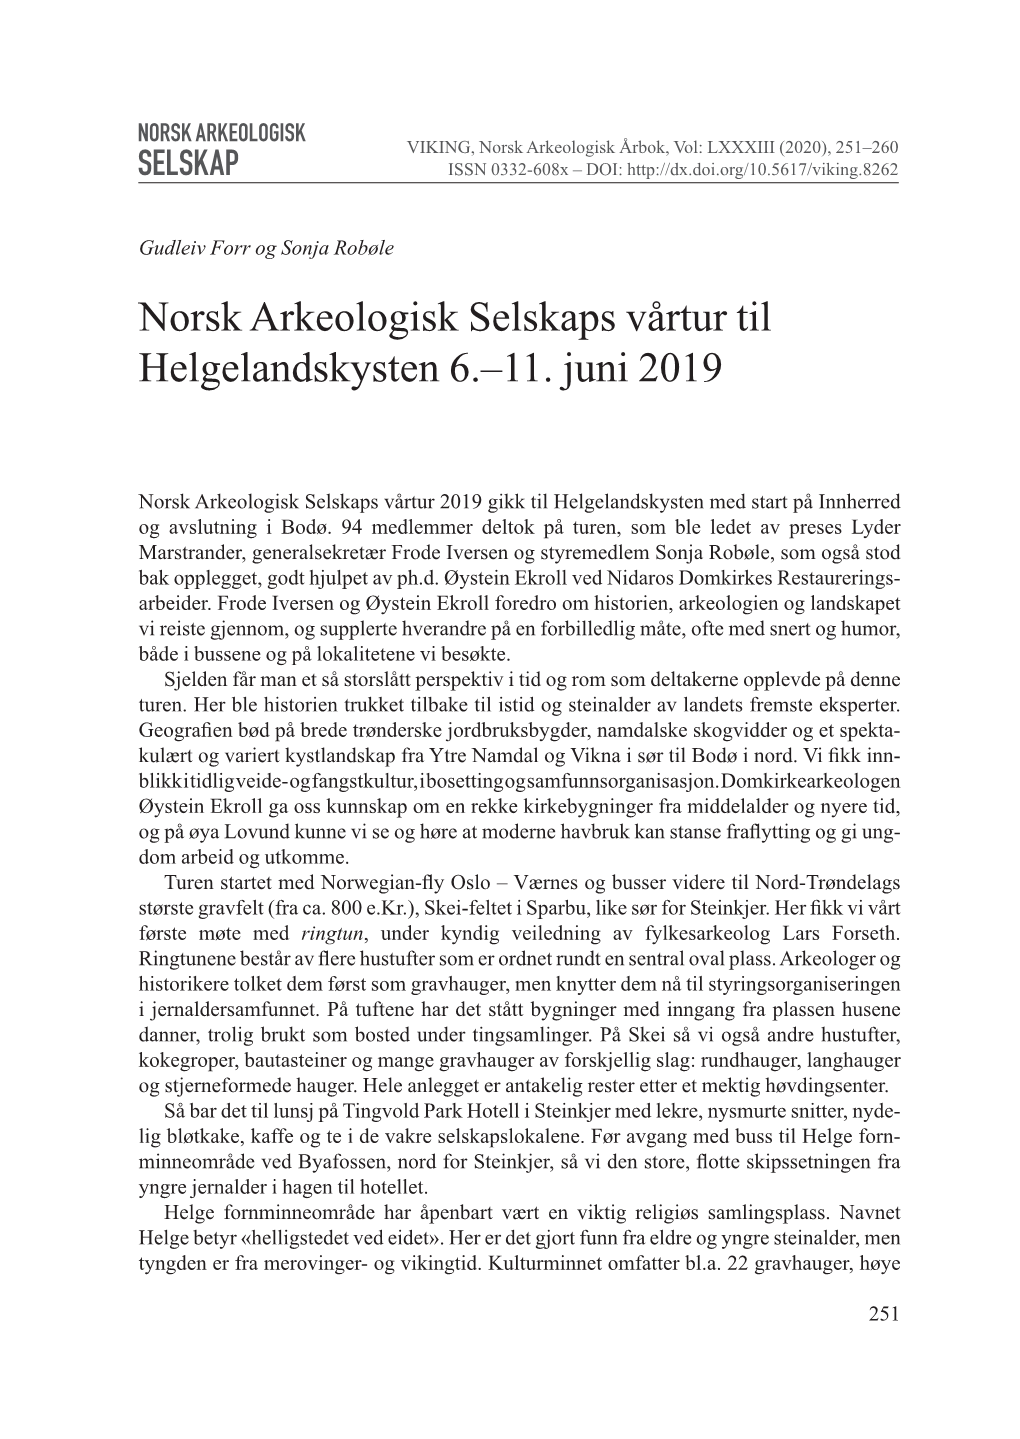 Norsk Arkeologisk Selskaps Vårtur Til Helgelandskysten 6.–11. Juni 2019